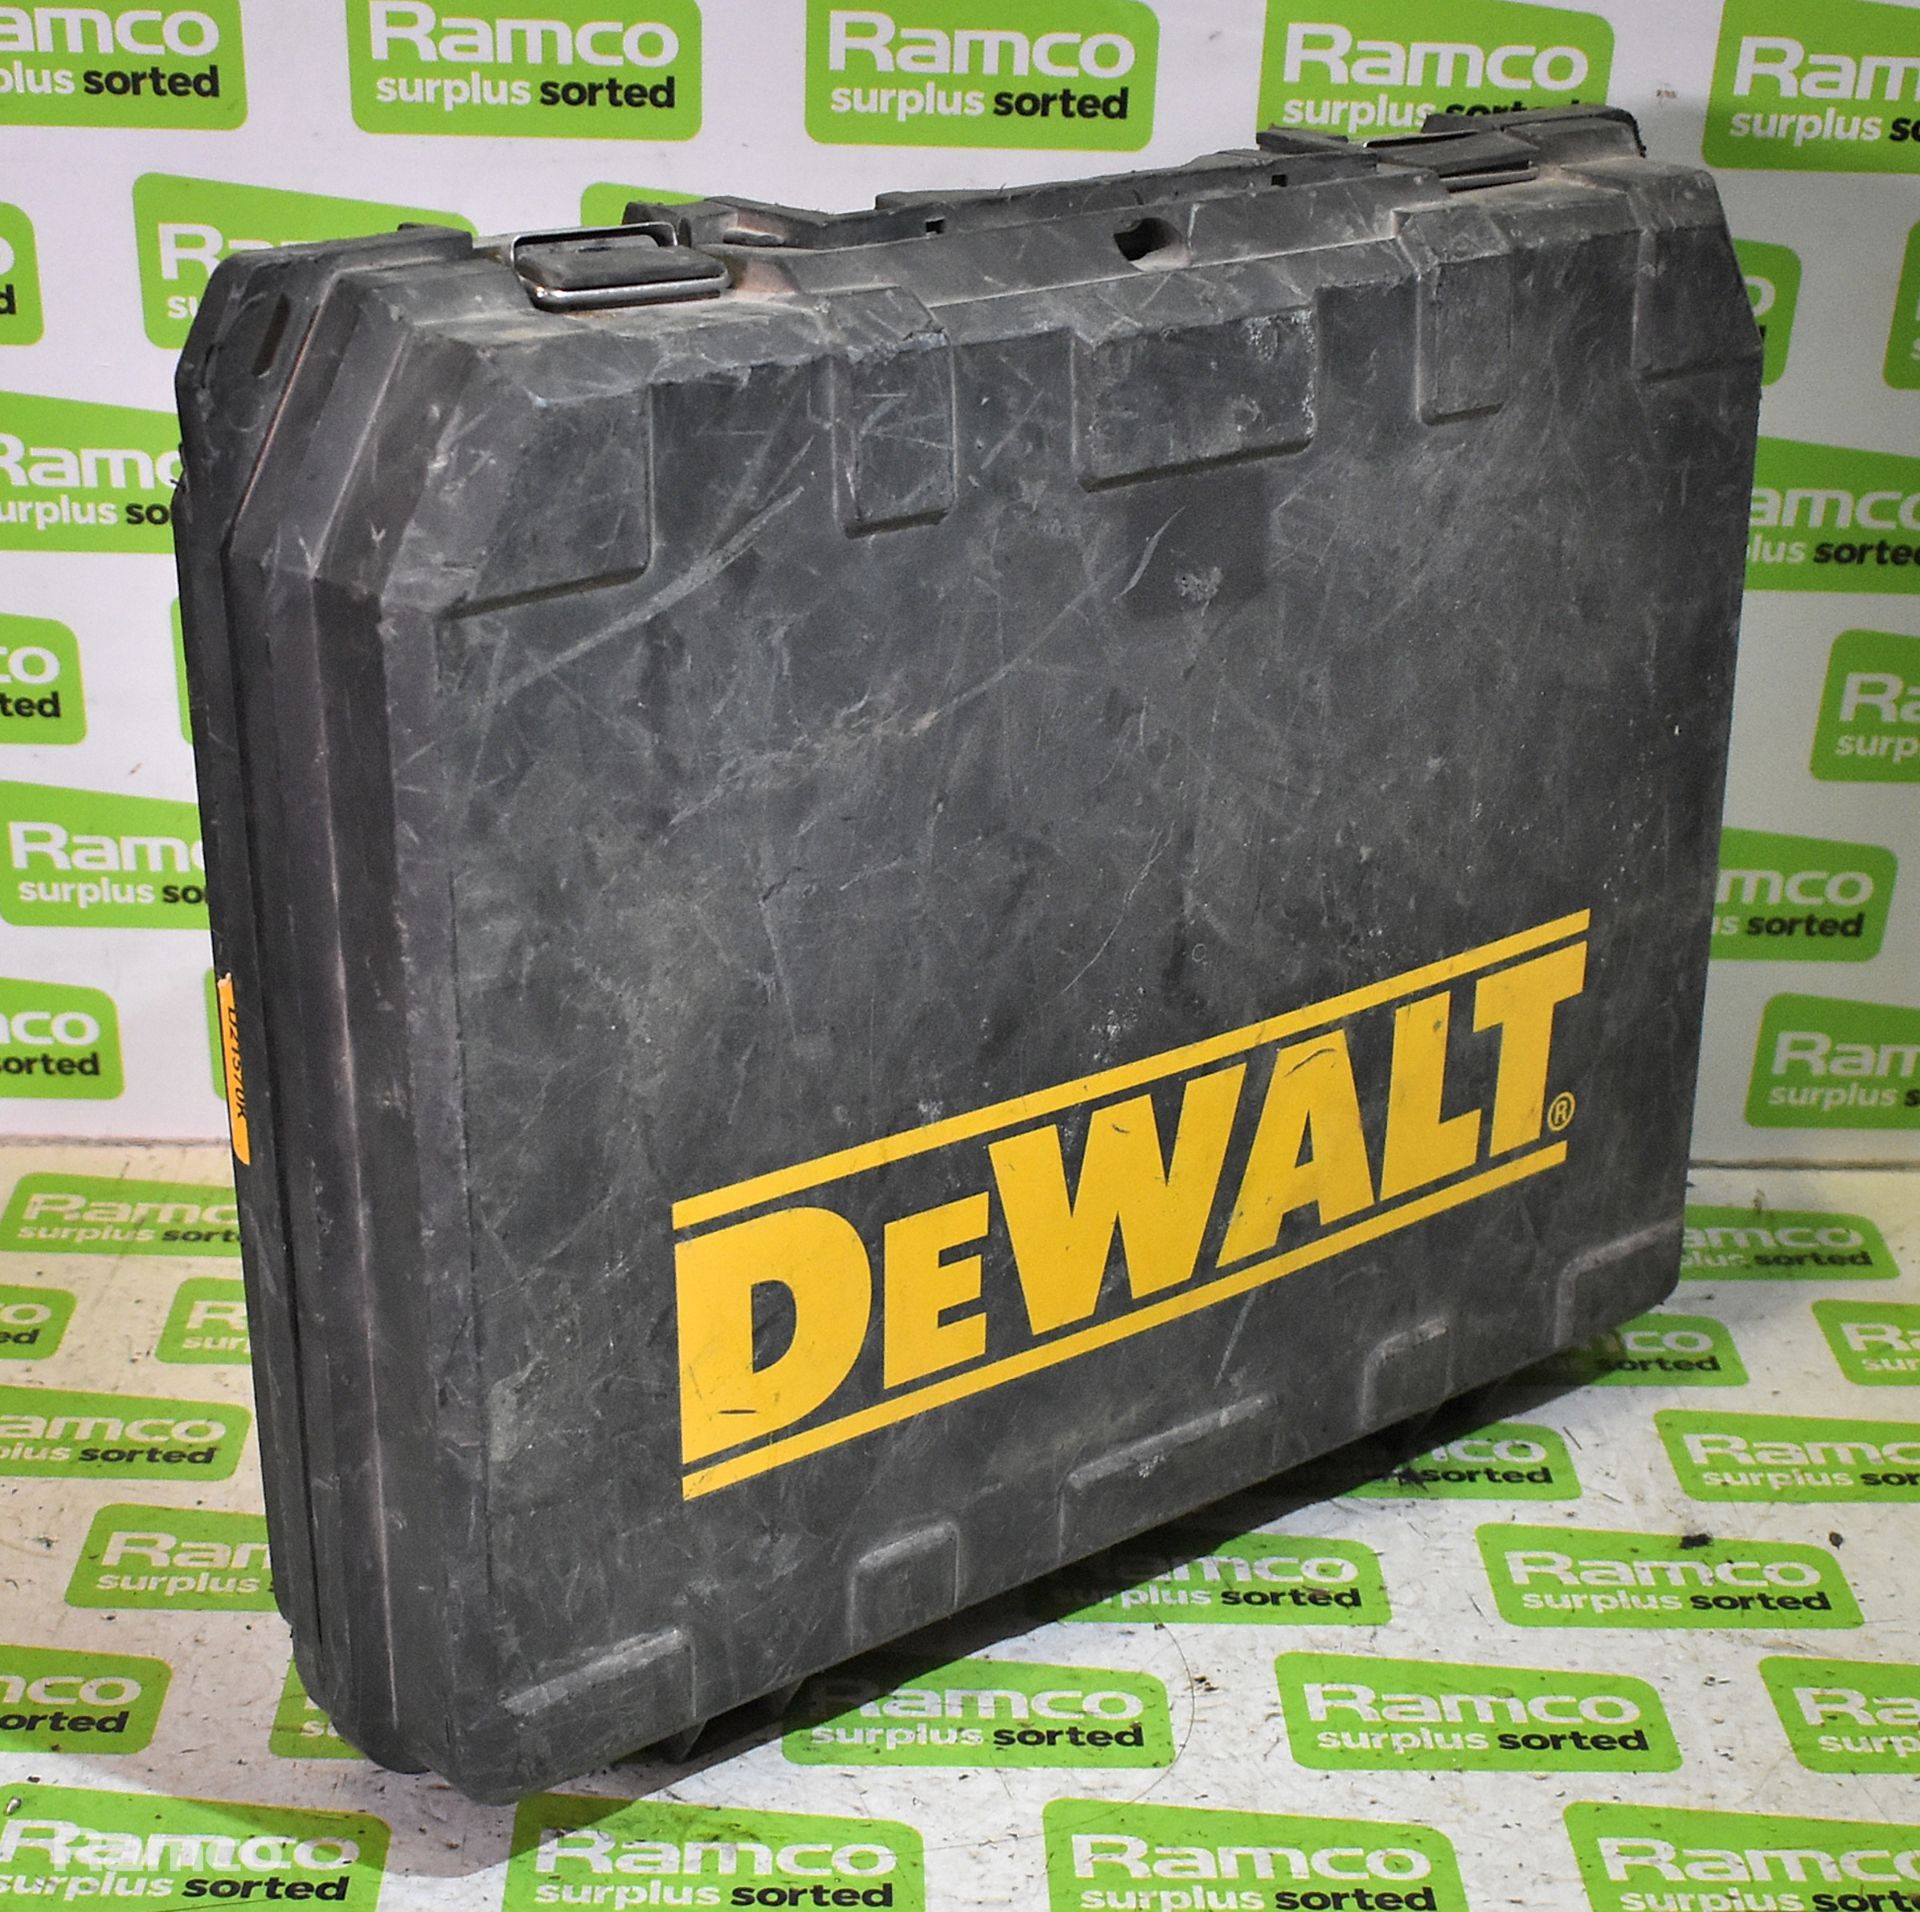 Dewalt D21570 drill, Dewalt DWE560 circular saw and Einhell E TE-CS190/1 circular saw - Image 5 of 8